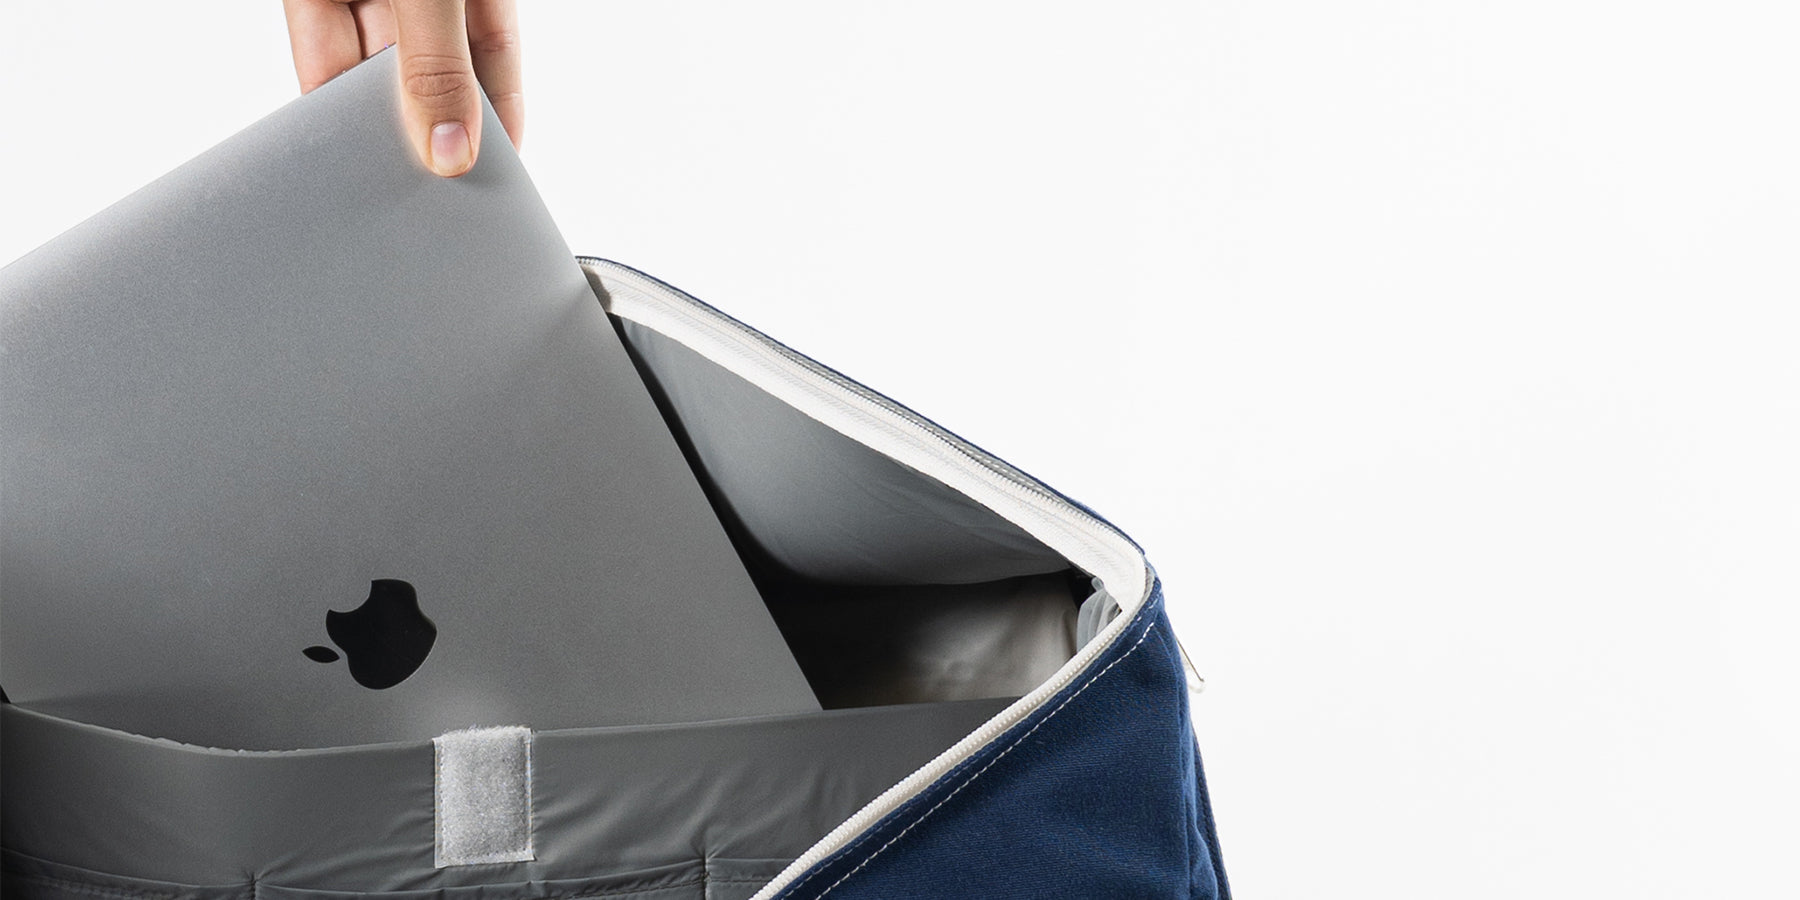 Ein praktisches Feature der Tasche ist das separate Laptopfach im Innern. Denn es ist eine Tasche für den ganzen Tag oder als Weekender für unterwegs. Die extragrosse Öffnung erlaubt dir schnelles ein- und auspacken und du behältst immer den Überblick.